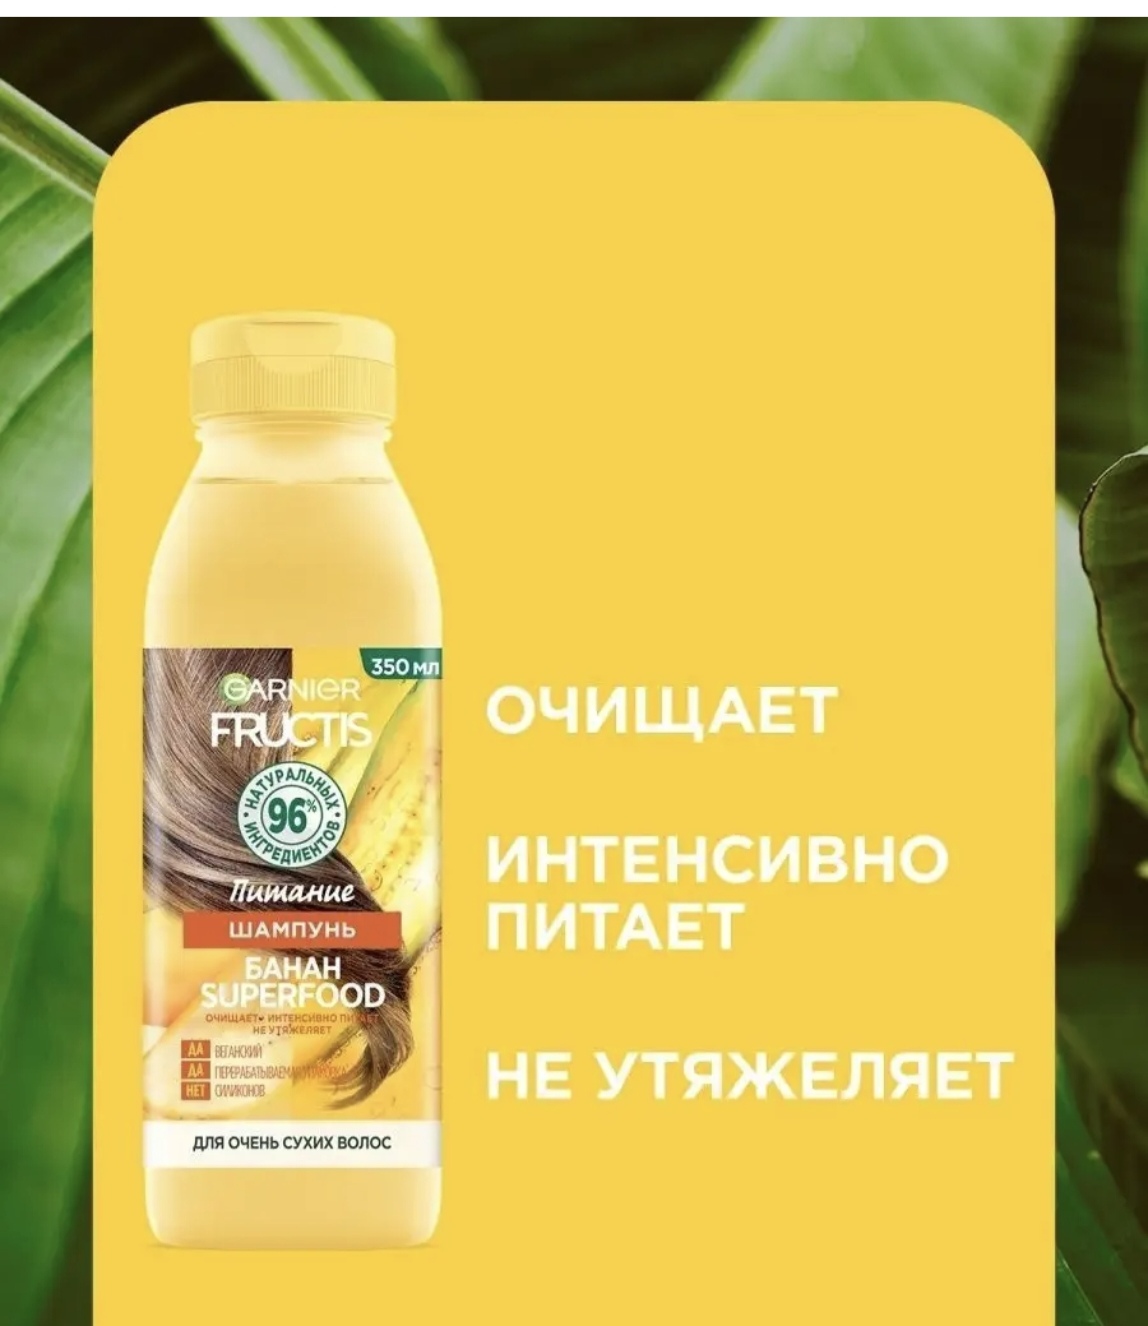 俄罗斯进口 卡尼尔水果萃取系列香蕉洗发水350ml强效滋养健康秀发